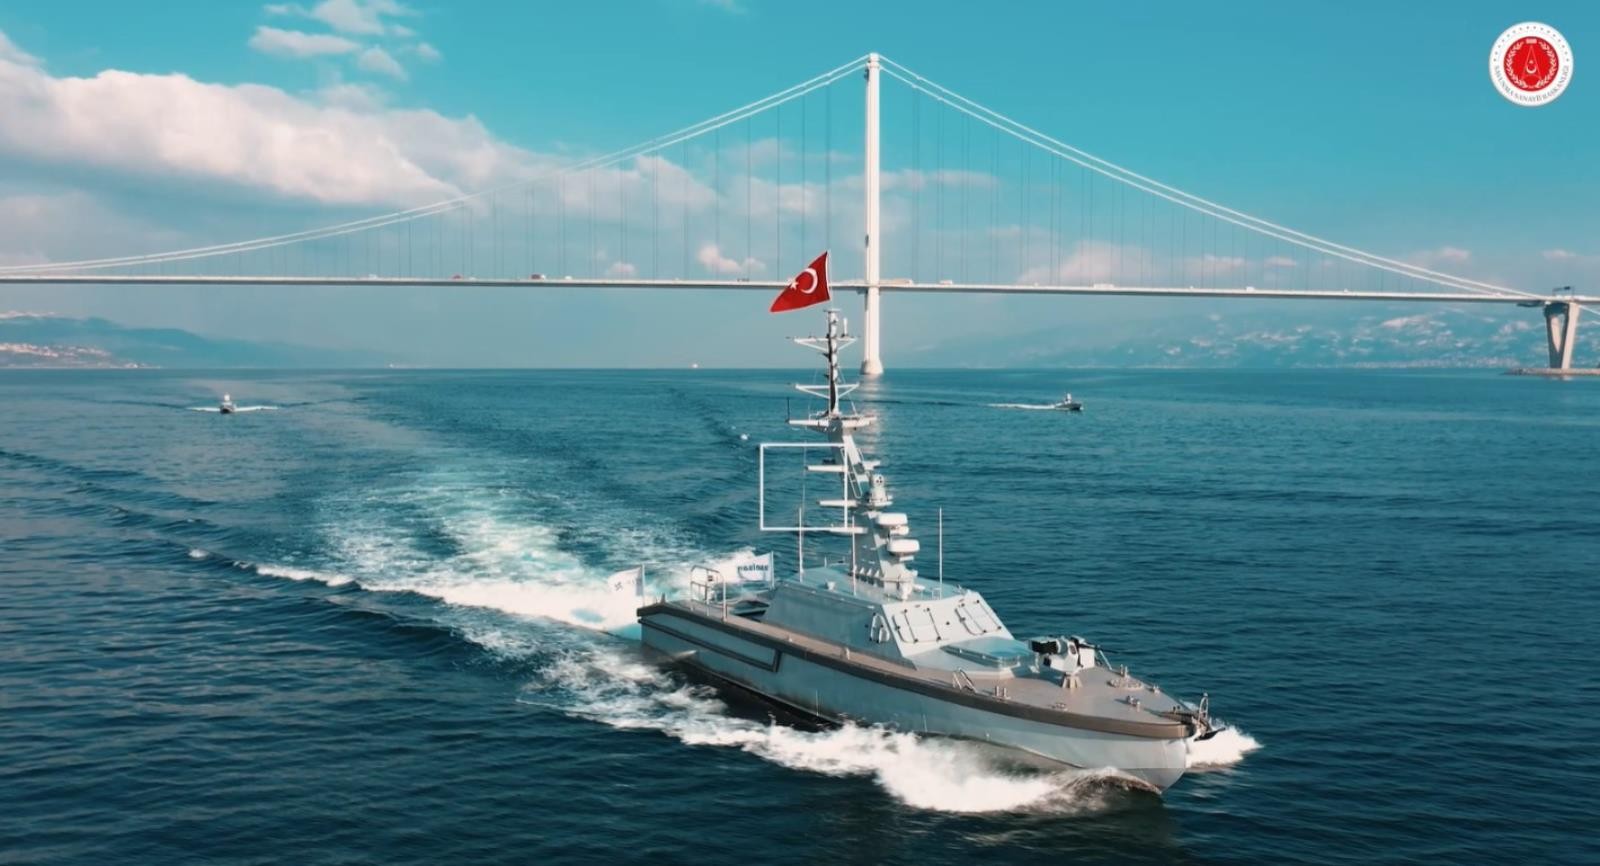 Wodne tonie podbije rój zrobotyzowanych statków bojowych, Nowe USV tureckiej firmy Aselsan